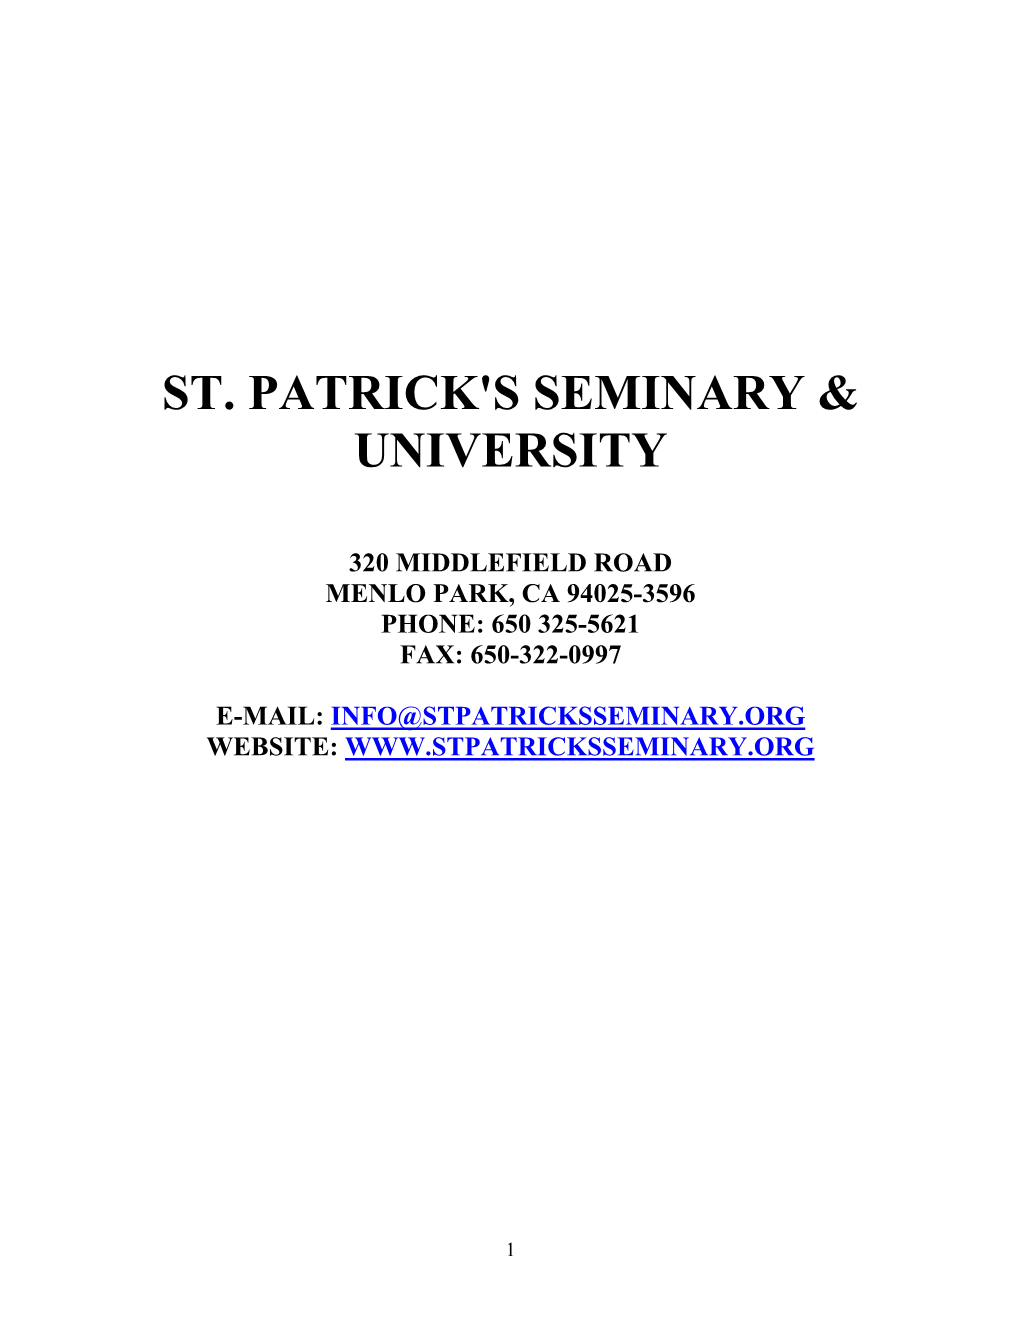 St. Patrick's Seminary & University